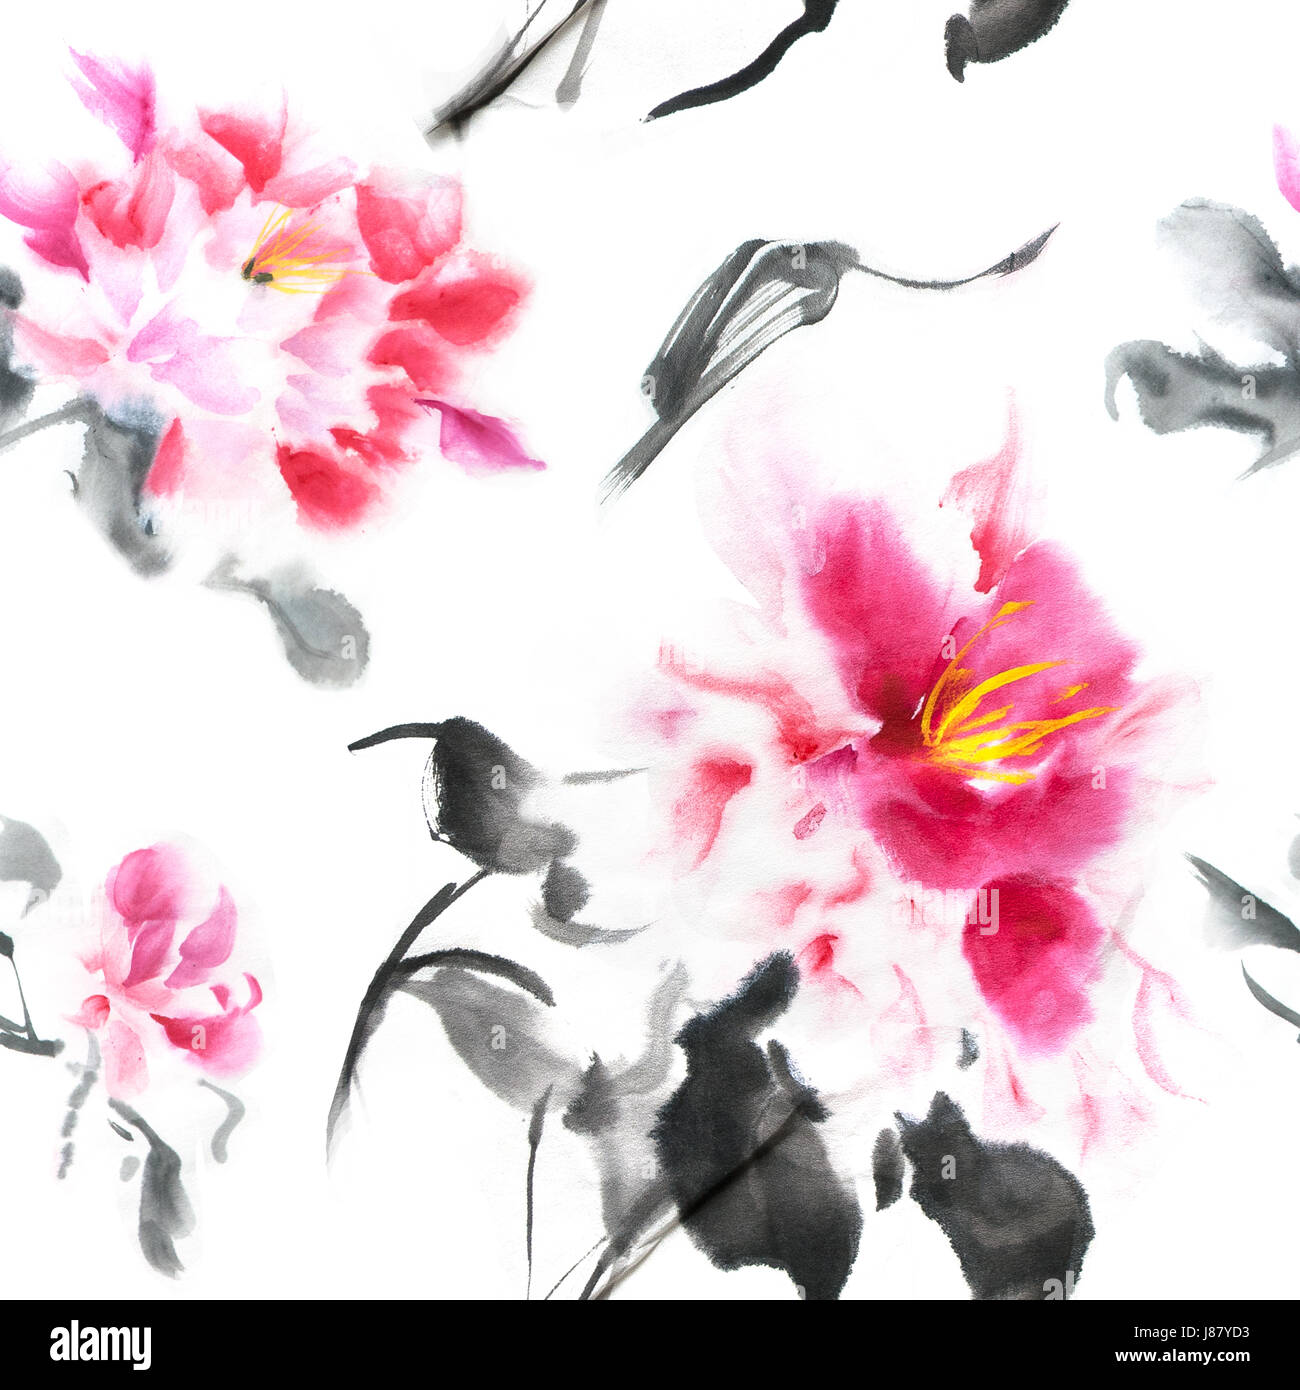 Beau motif transparent avec pivoines rose peint avec de l'encre dans le style japonais. Papier peint à l'aquarelle fleurs sur fond blanc. Illustration pour le tissu imprimé, toile, papier d'emballage Banque D'Images